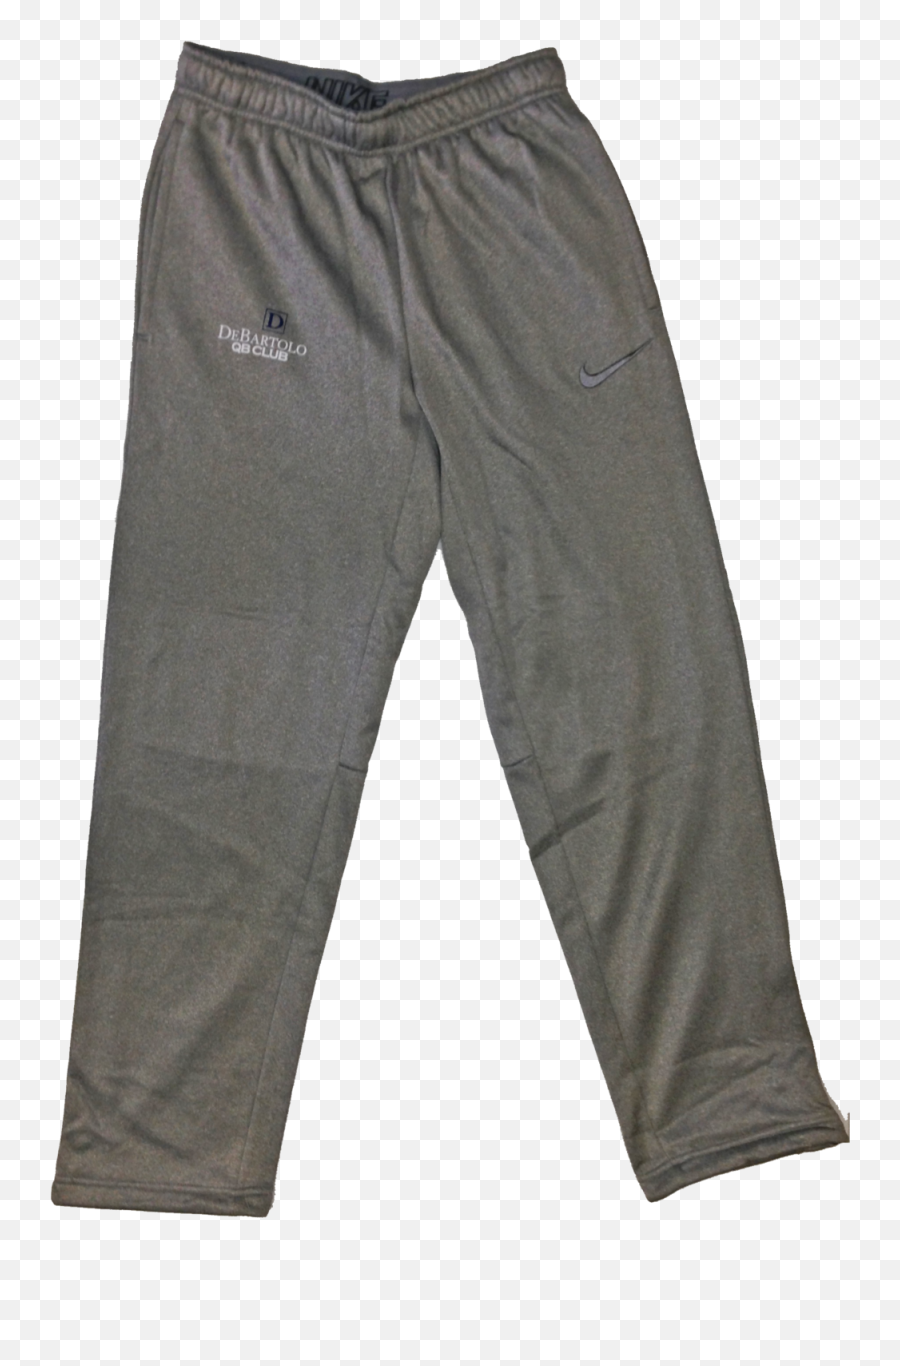 Download Grey Debartolo Qb Club Sweatpants - Pocket Png Pocket,Sweatpants Png